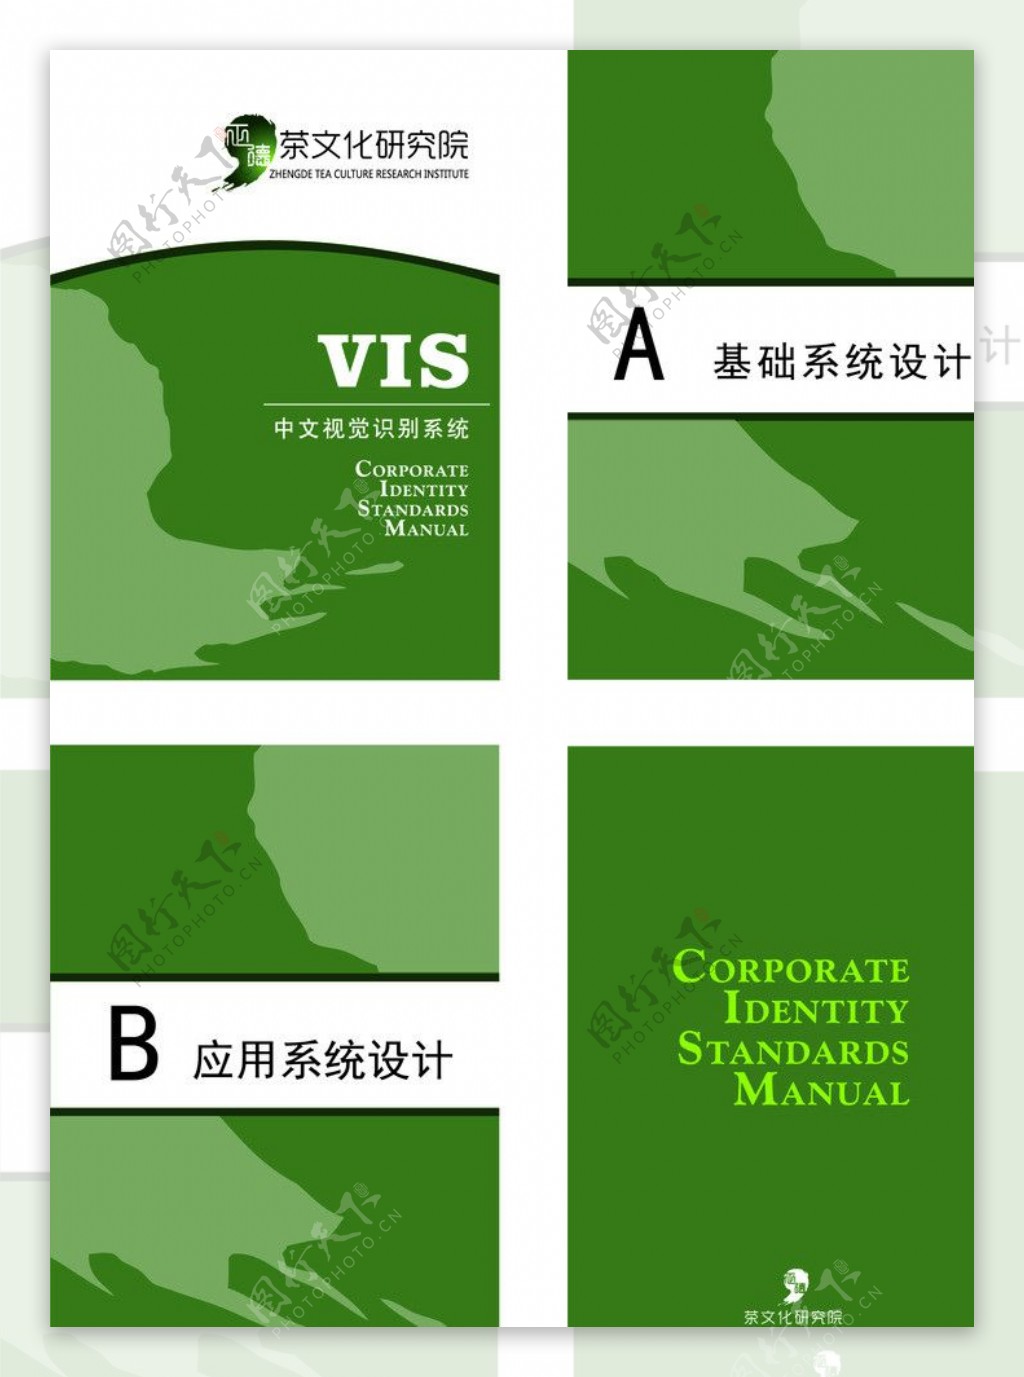 茶研究协会VI手册图片